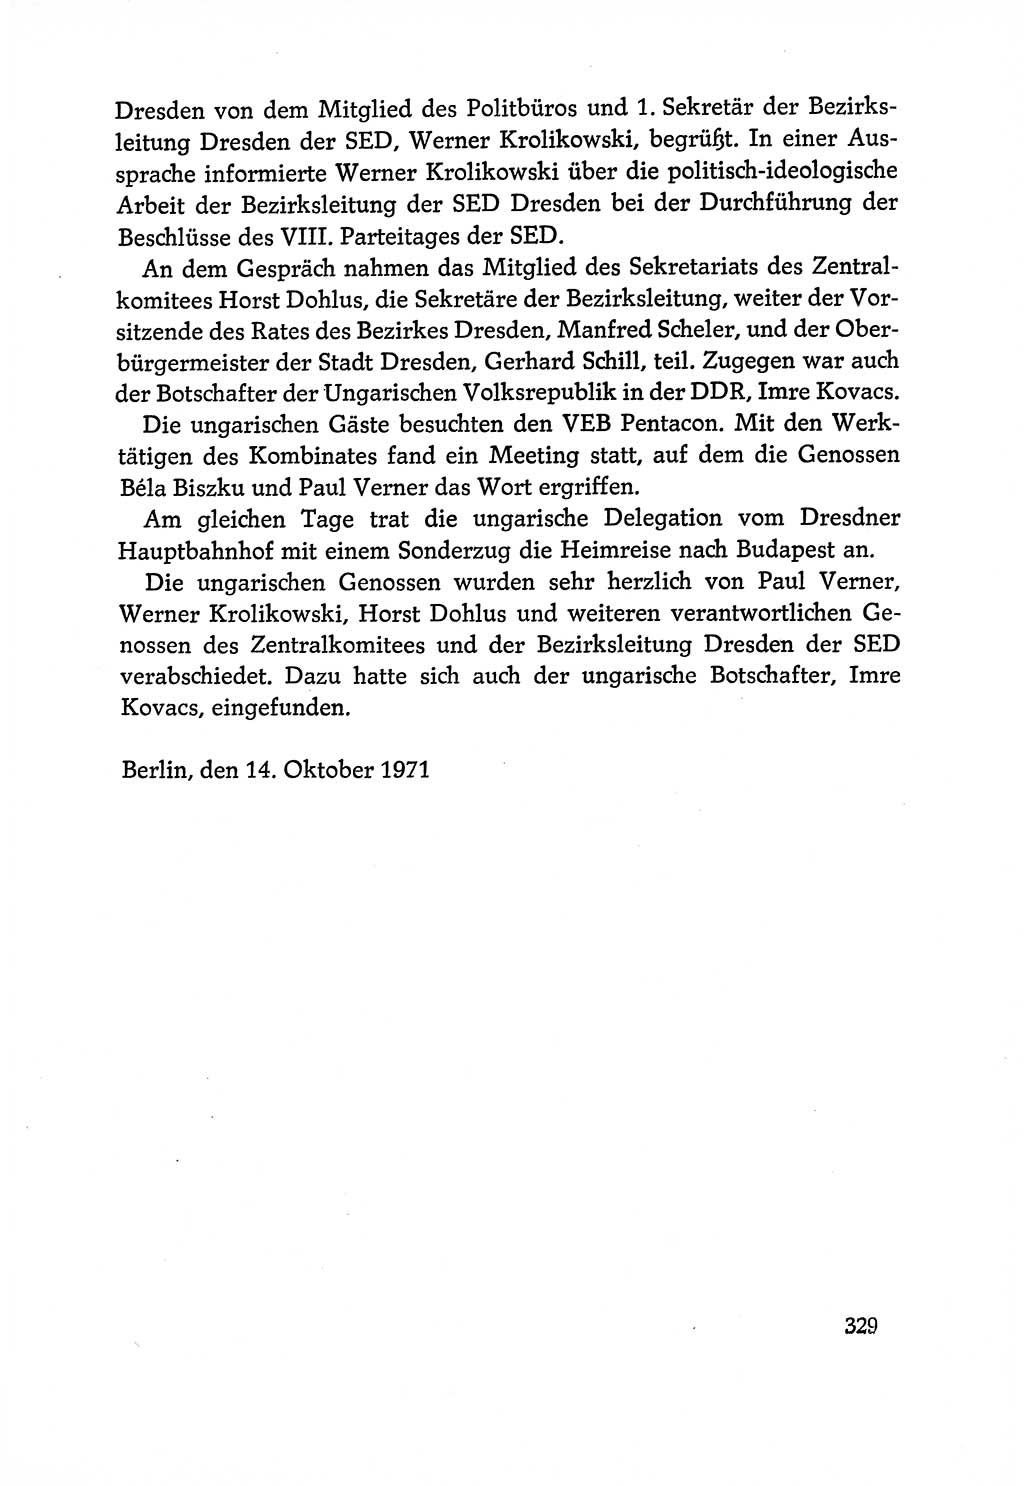 Dokumente der Sozialistischen Einheitspartei Deutschlands (SED) [Deutsche Demokratische Republik (DDR)] 1970-1971, Seite 329 (Dok. SED DDR 1970-1971, S. 329)